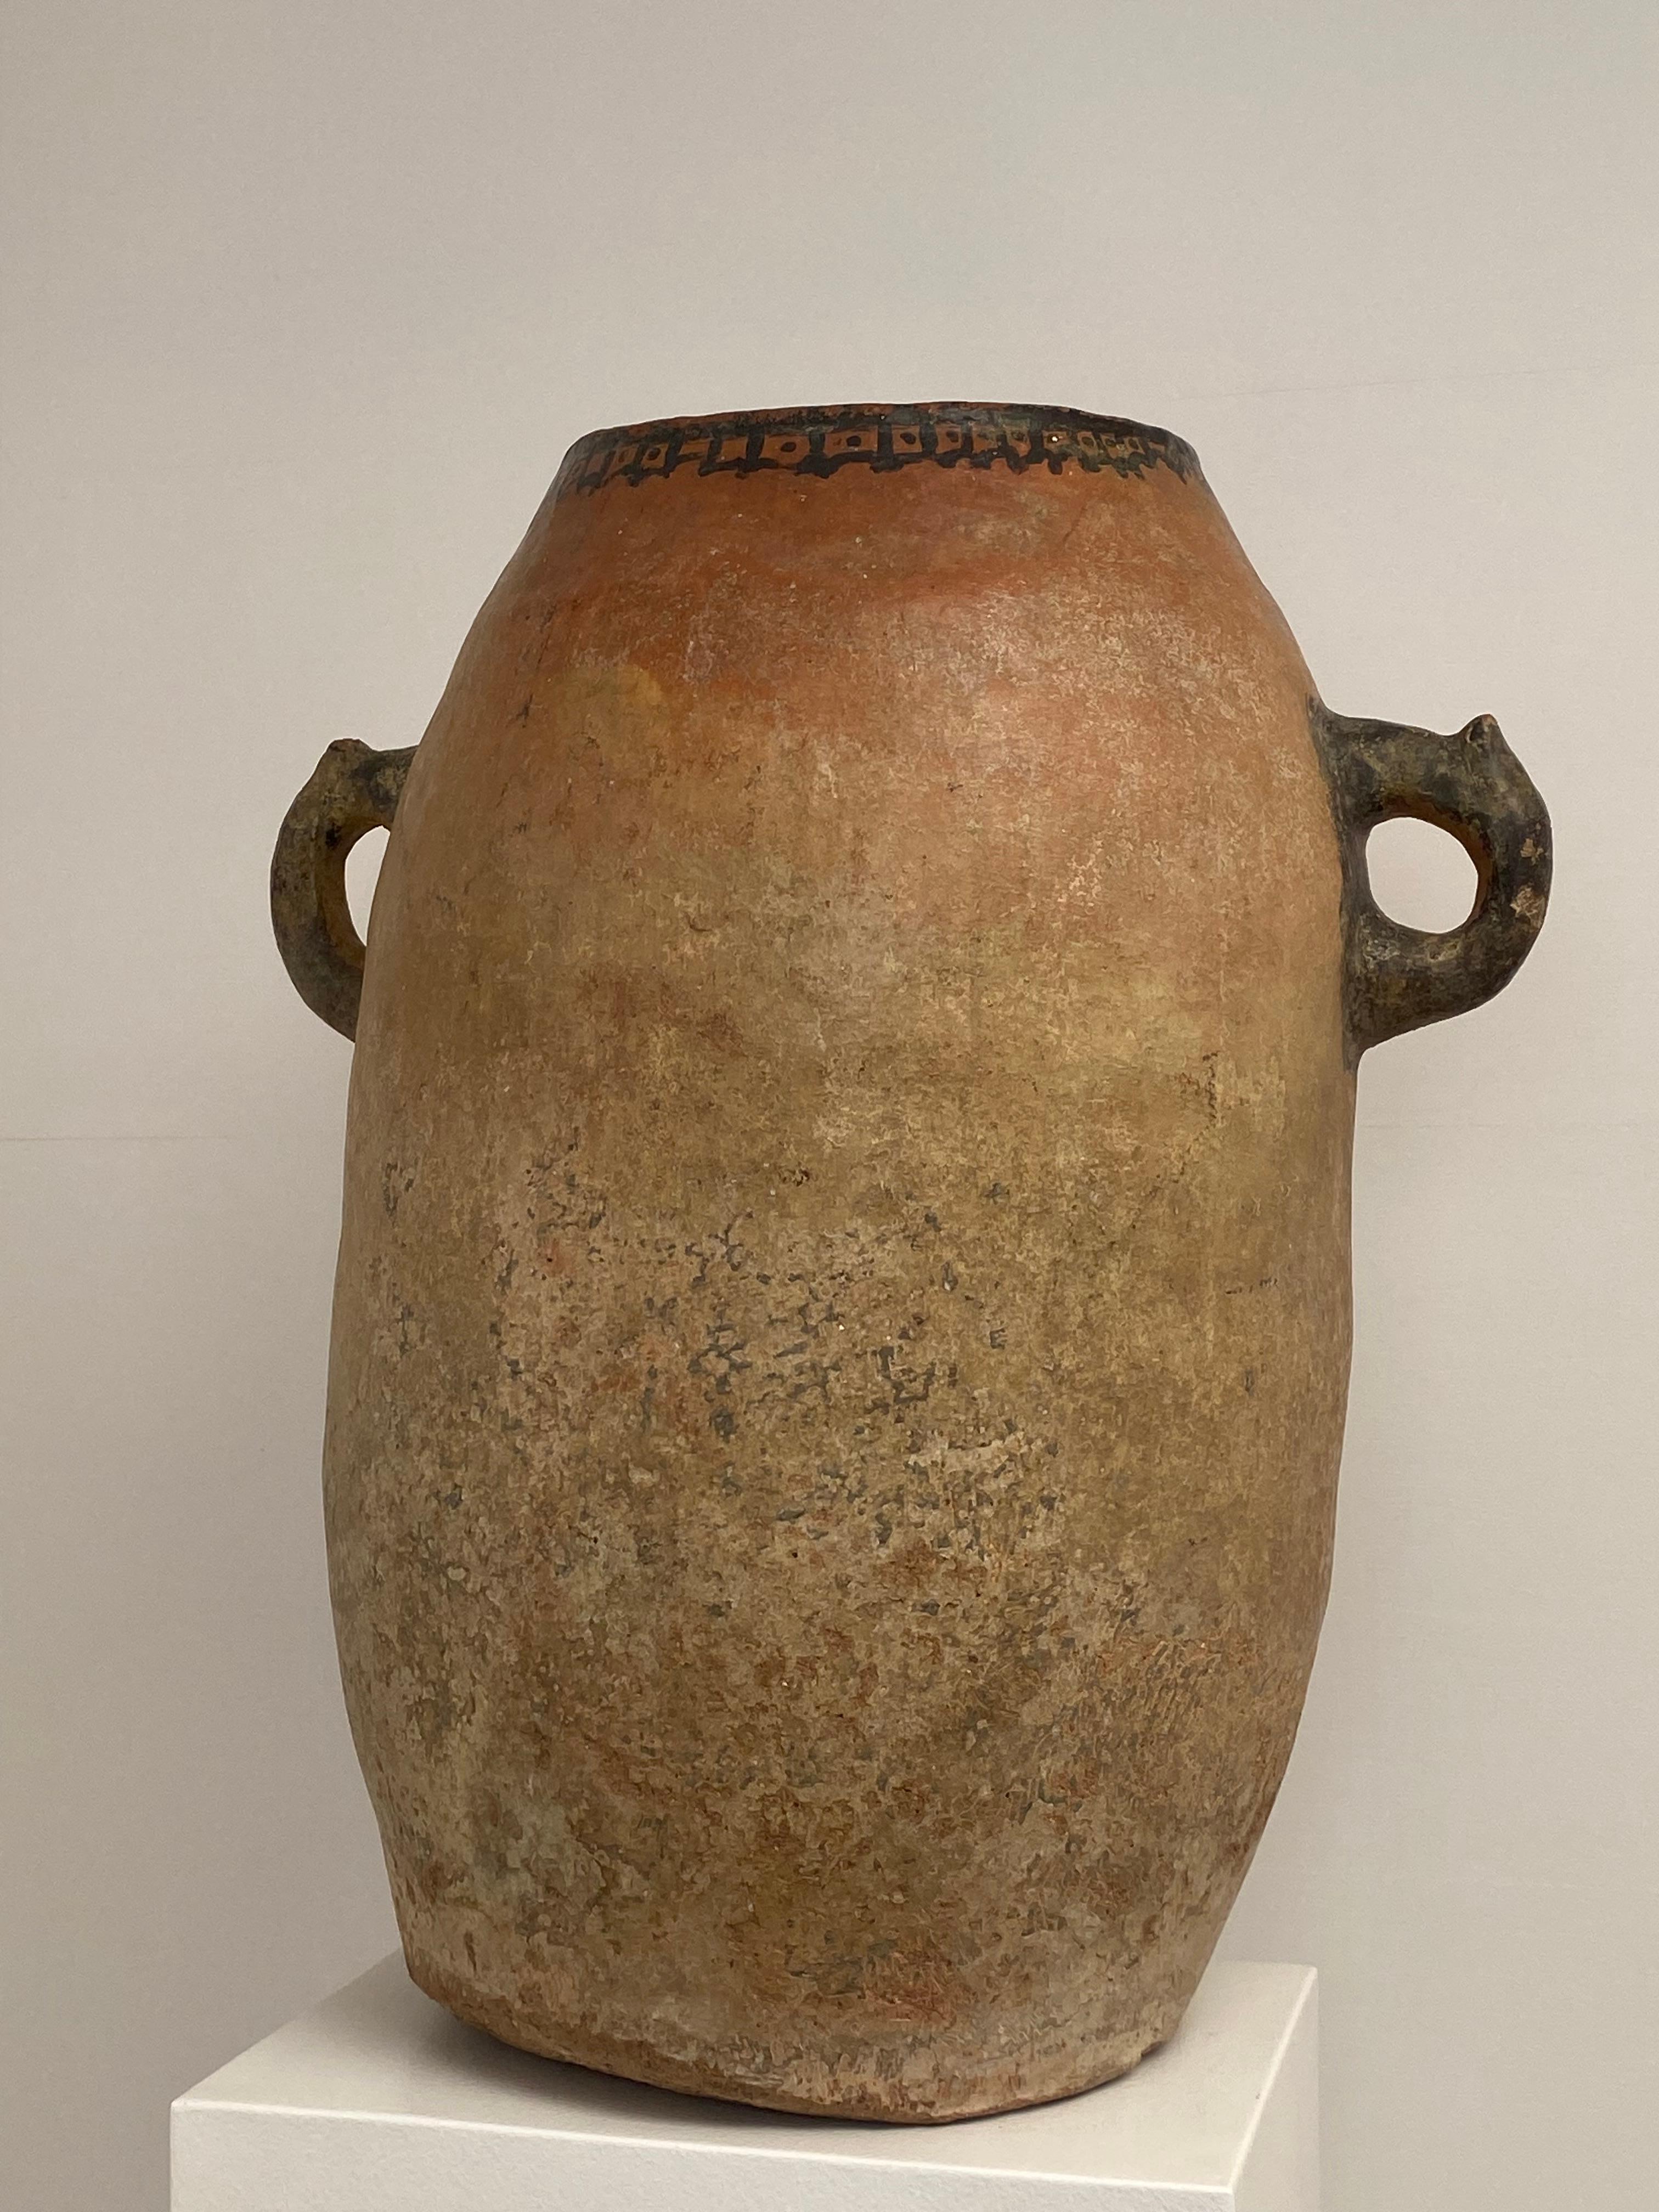 Große Terrakotta-Vase aus Marokko, berberischer Herkunft, frühes 19. Jahrhundert,
die Vase hat eine sehr schöne Patina, schöne Beige-Braun Farbe und Glanz,
die Urne ist oben ein wenig verziert,
sehr dekoratives Objekt 